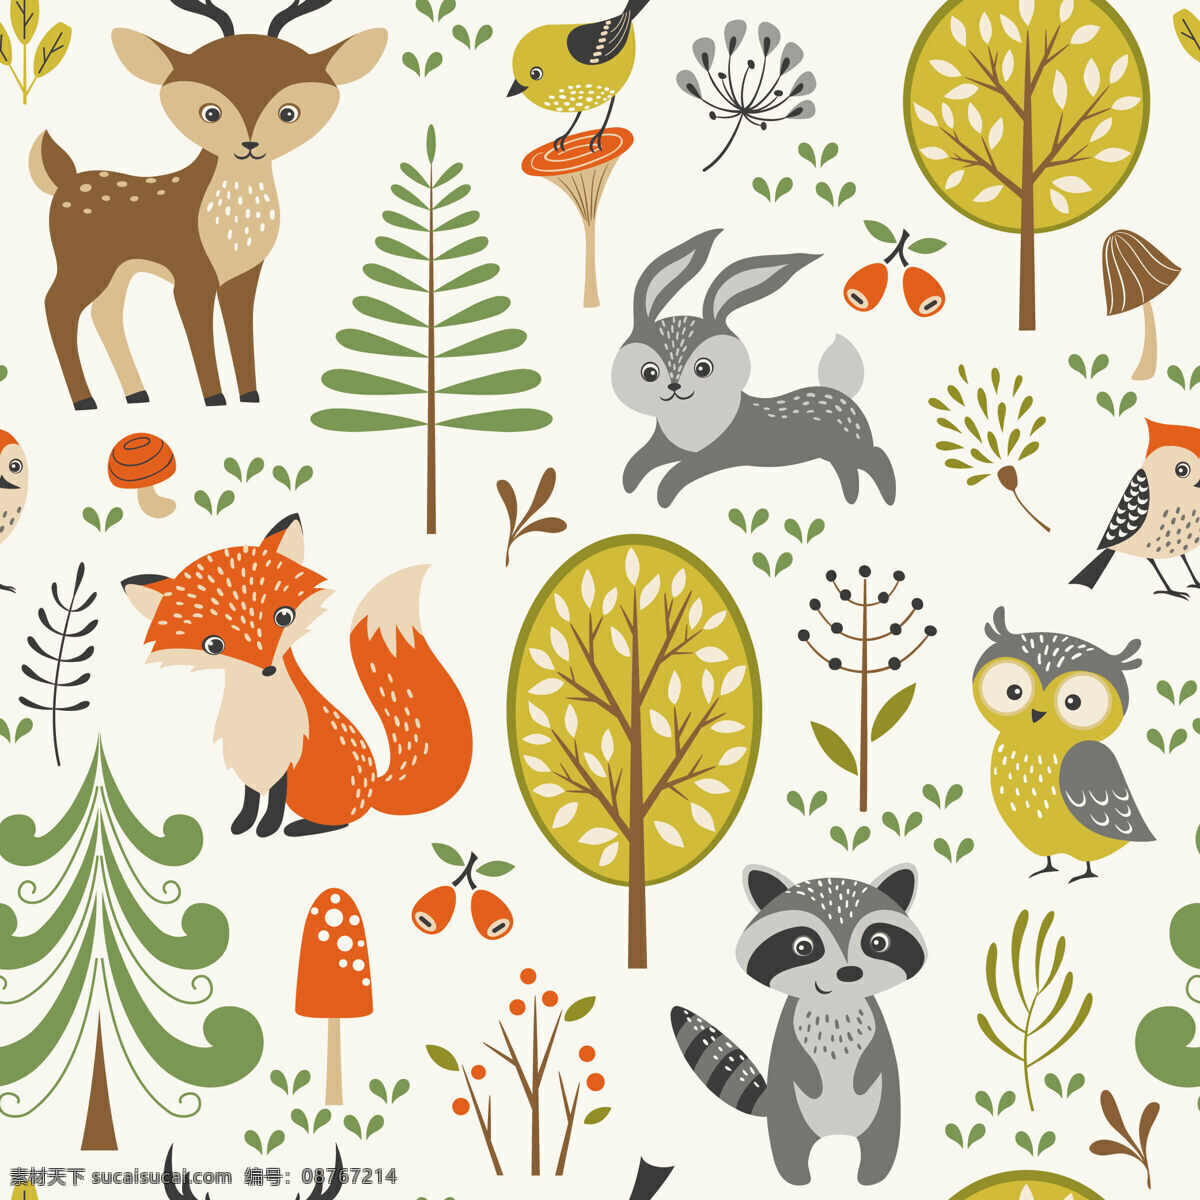 可爱 清新 动物 小鹿 壁纸 图案 装饰设计 壁纸图案 黄色树木 浣熊